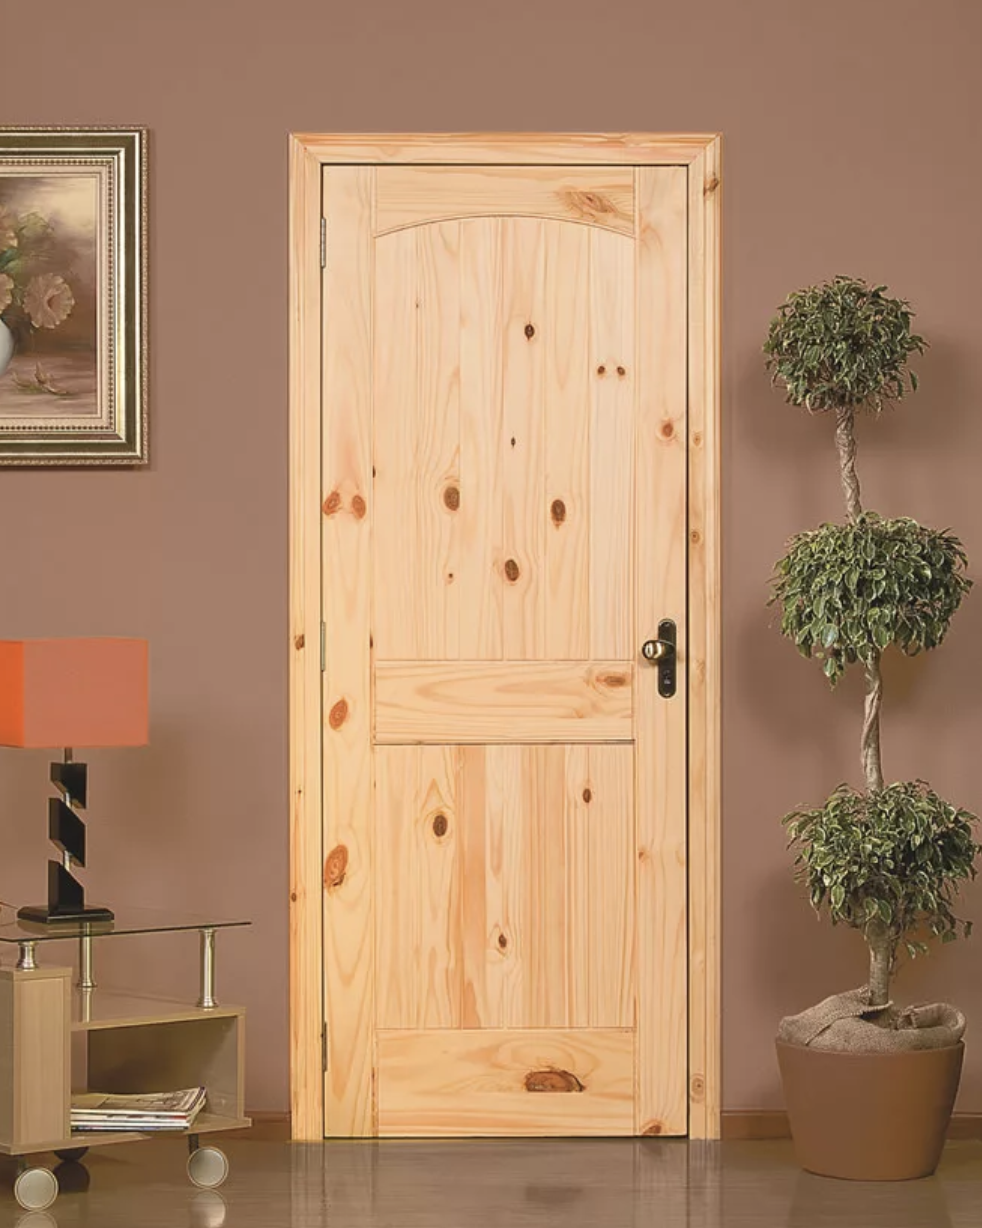 Купить межкомнатную дверь из сосны. Деревянная дверь. Деревянные двери межкомнатные. Двери межкомнатные дерево. Современные деревянные двери.